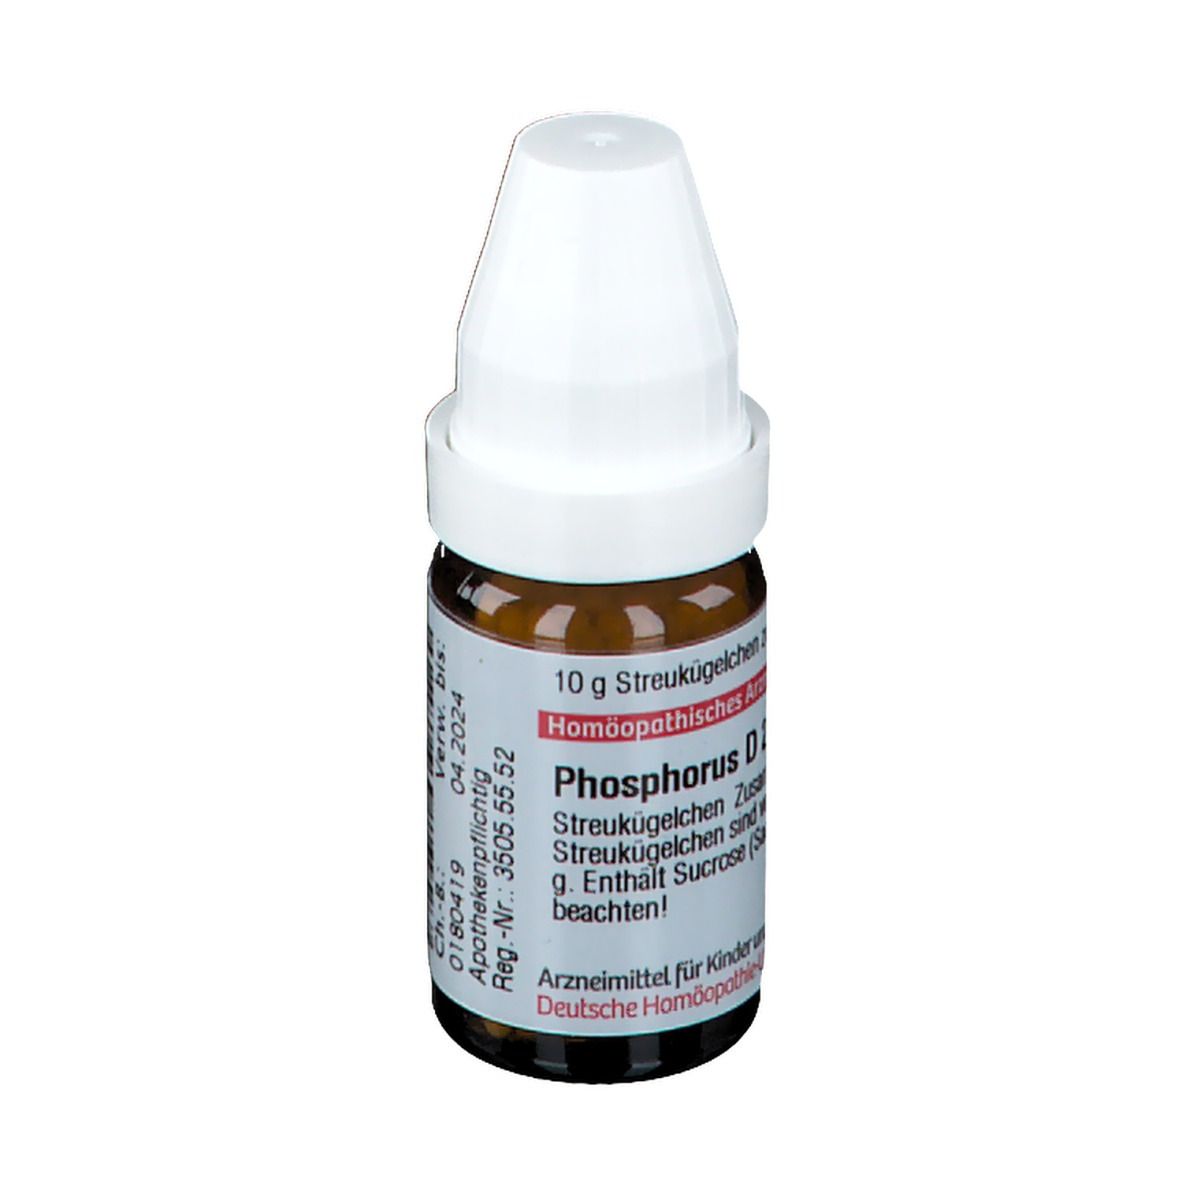 DHU Phosphorus D200